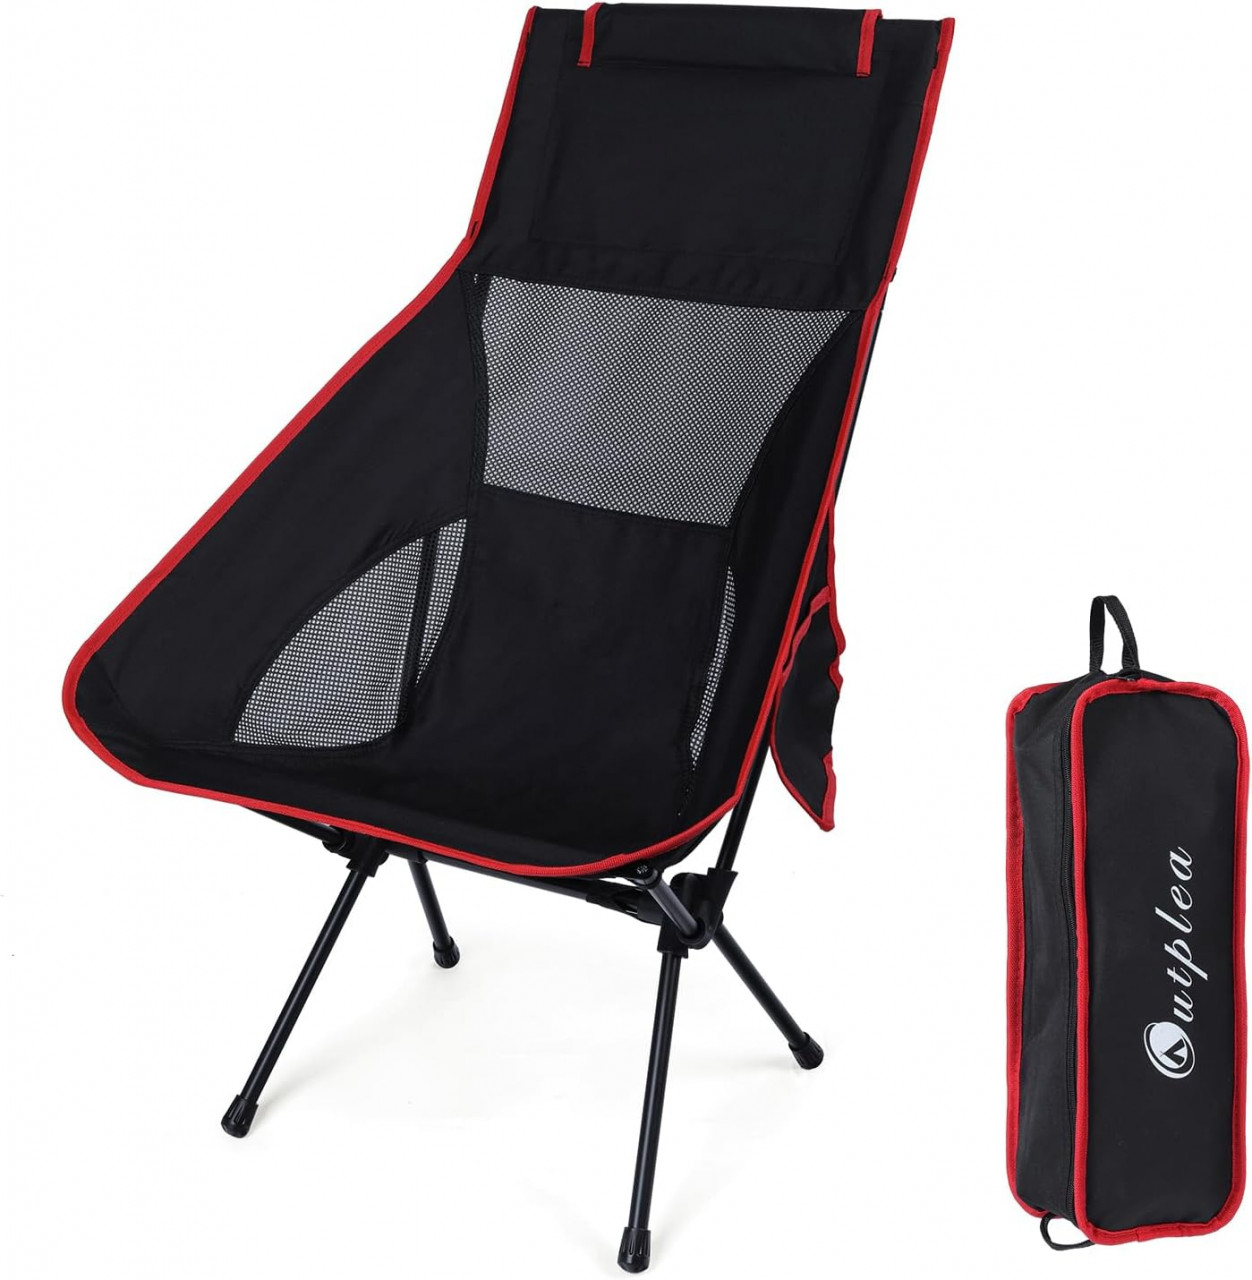 Scaun de camping pliabil Lafocuse, aliaj de aluminiu/poliester, negru/rosu, 60 x 60 x 85 cm